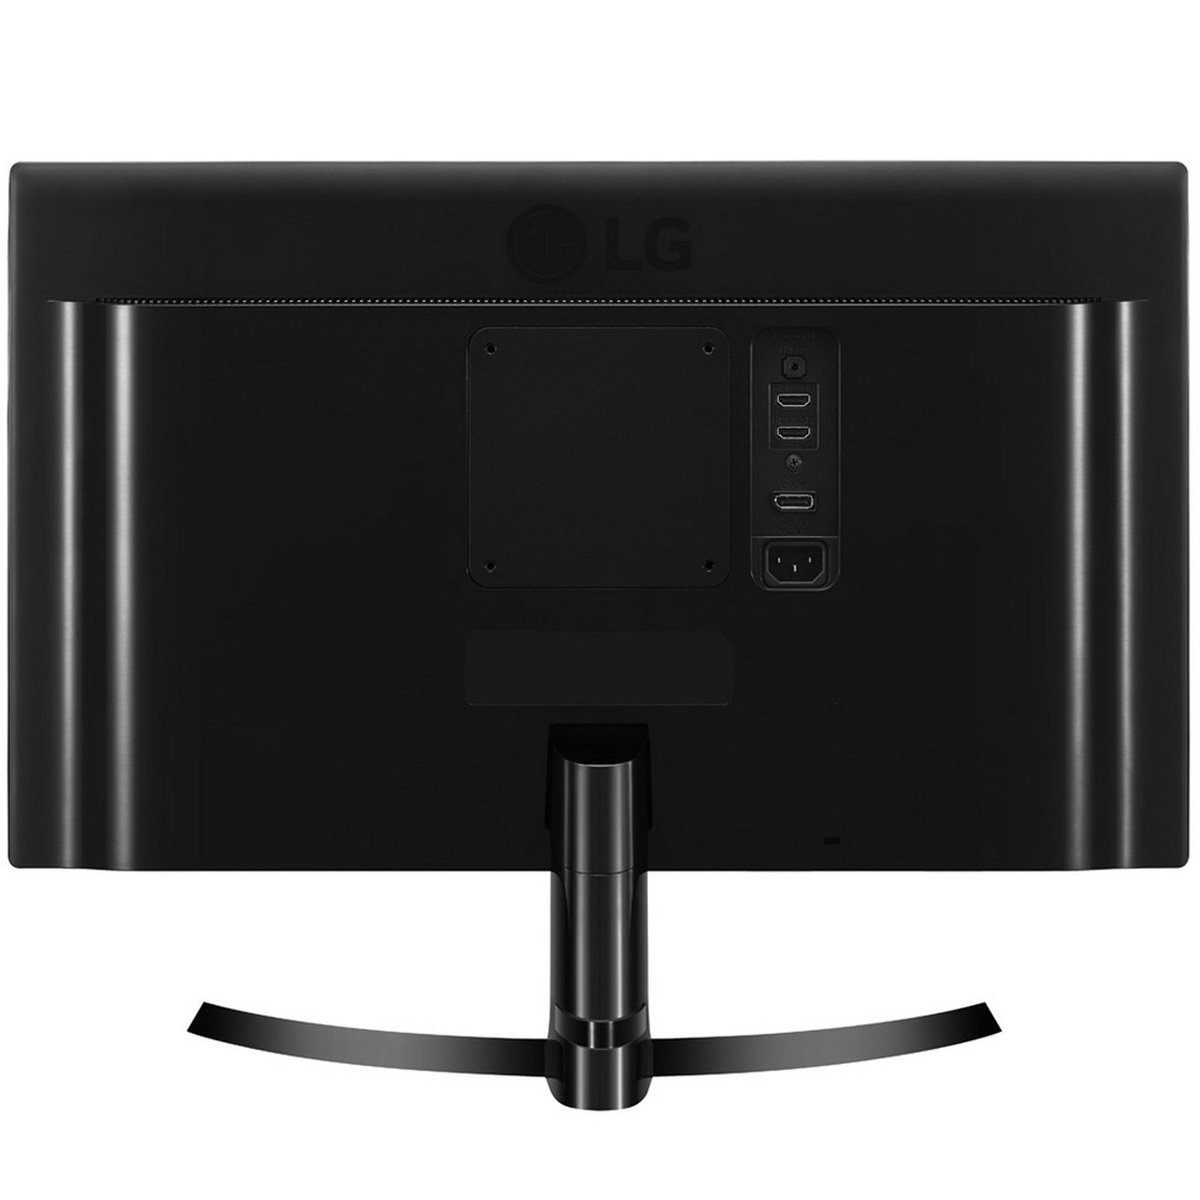 LG 4K UHD IPS LED Monitor 24UD58 23.8inch